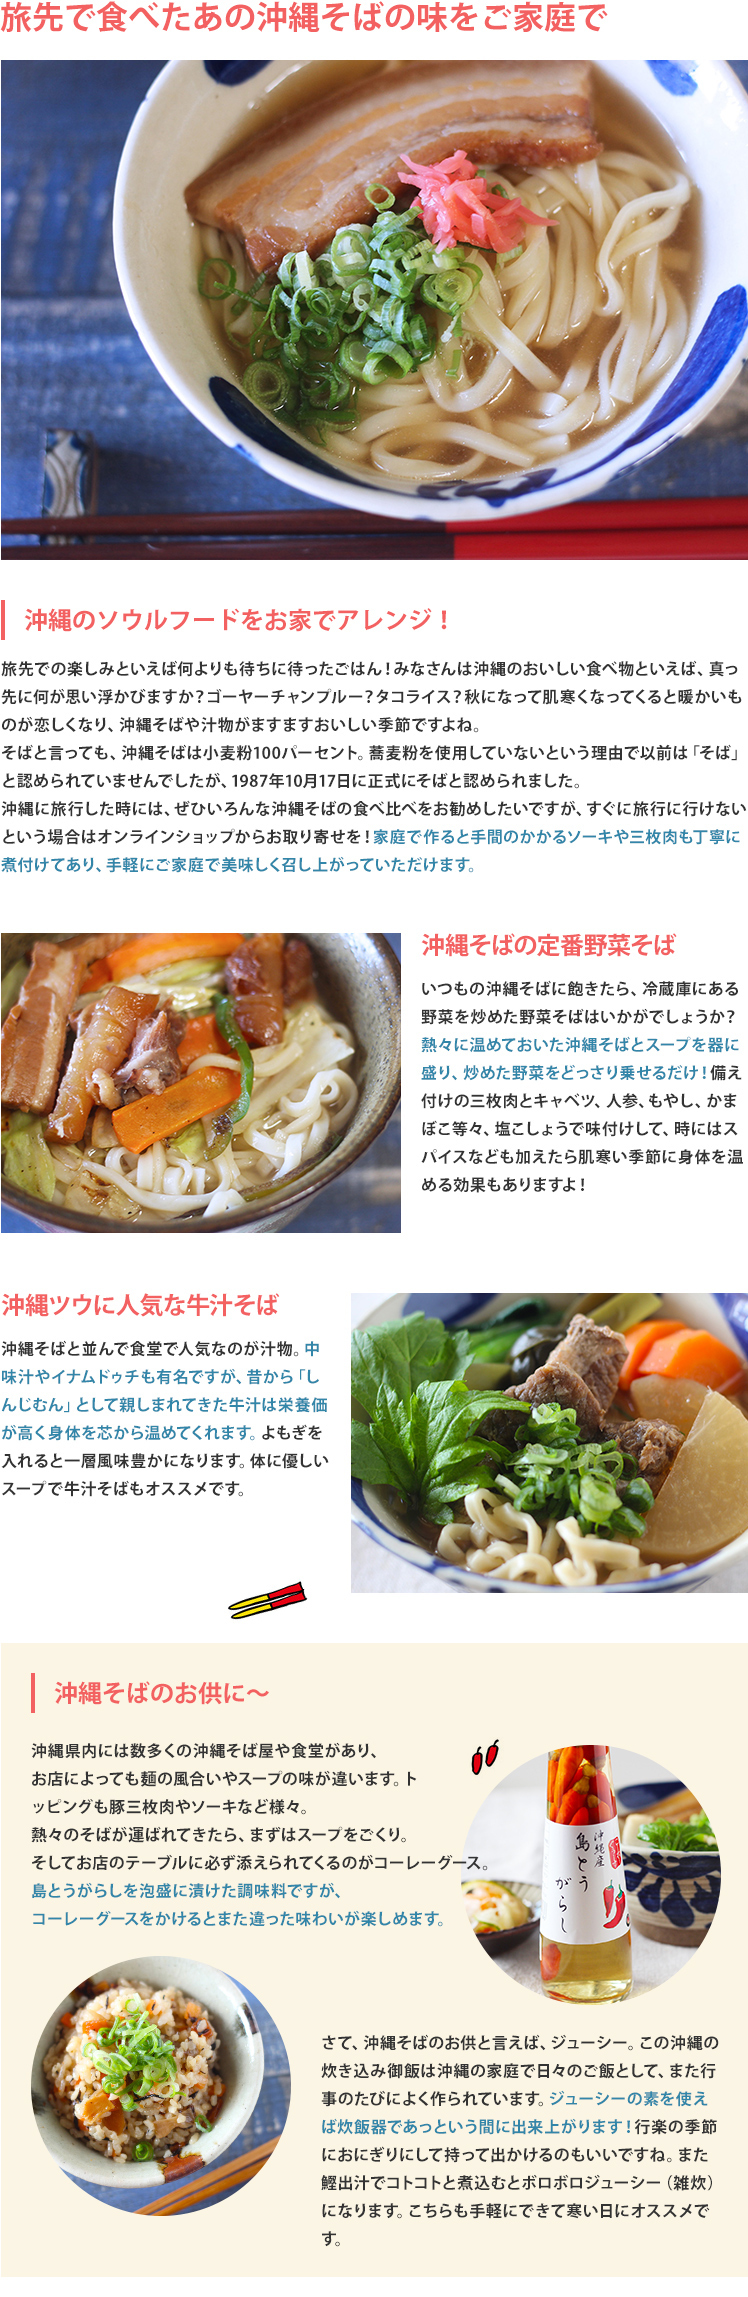 沖縄そば【麺・だし・そばセット】 | イオンの沖縄土産・特産品通販サイト イオン琉球オンラインショップ |